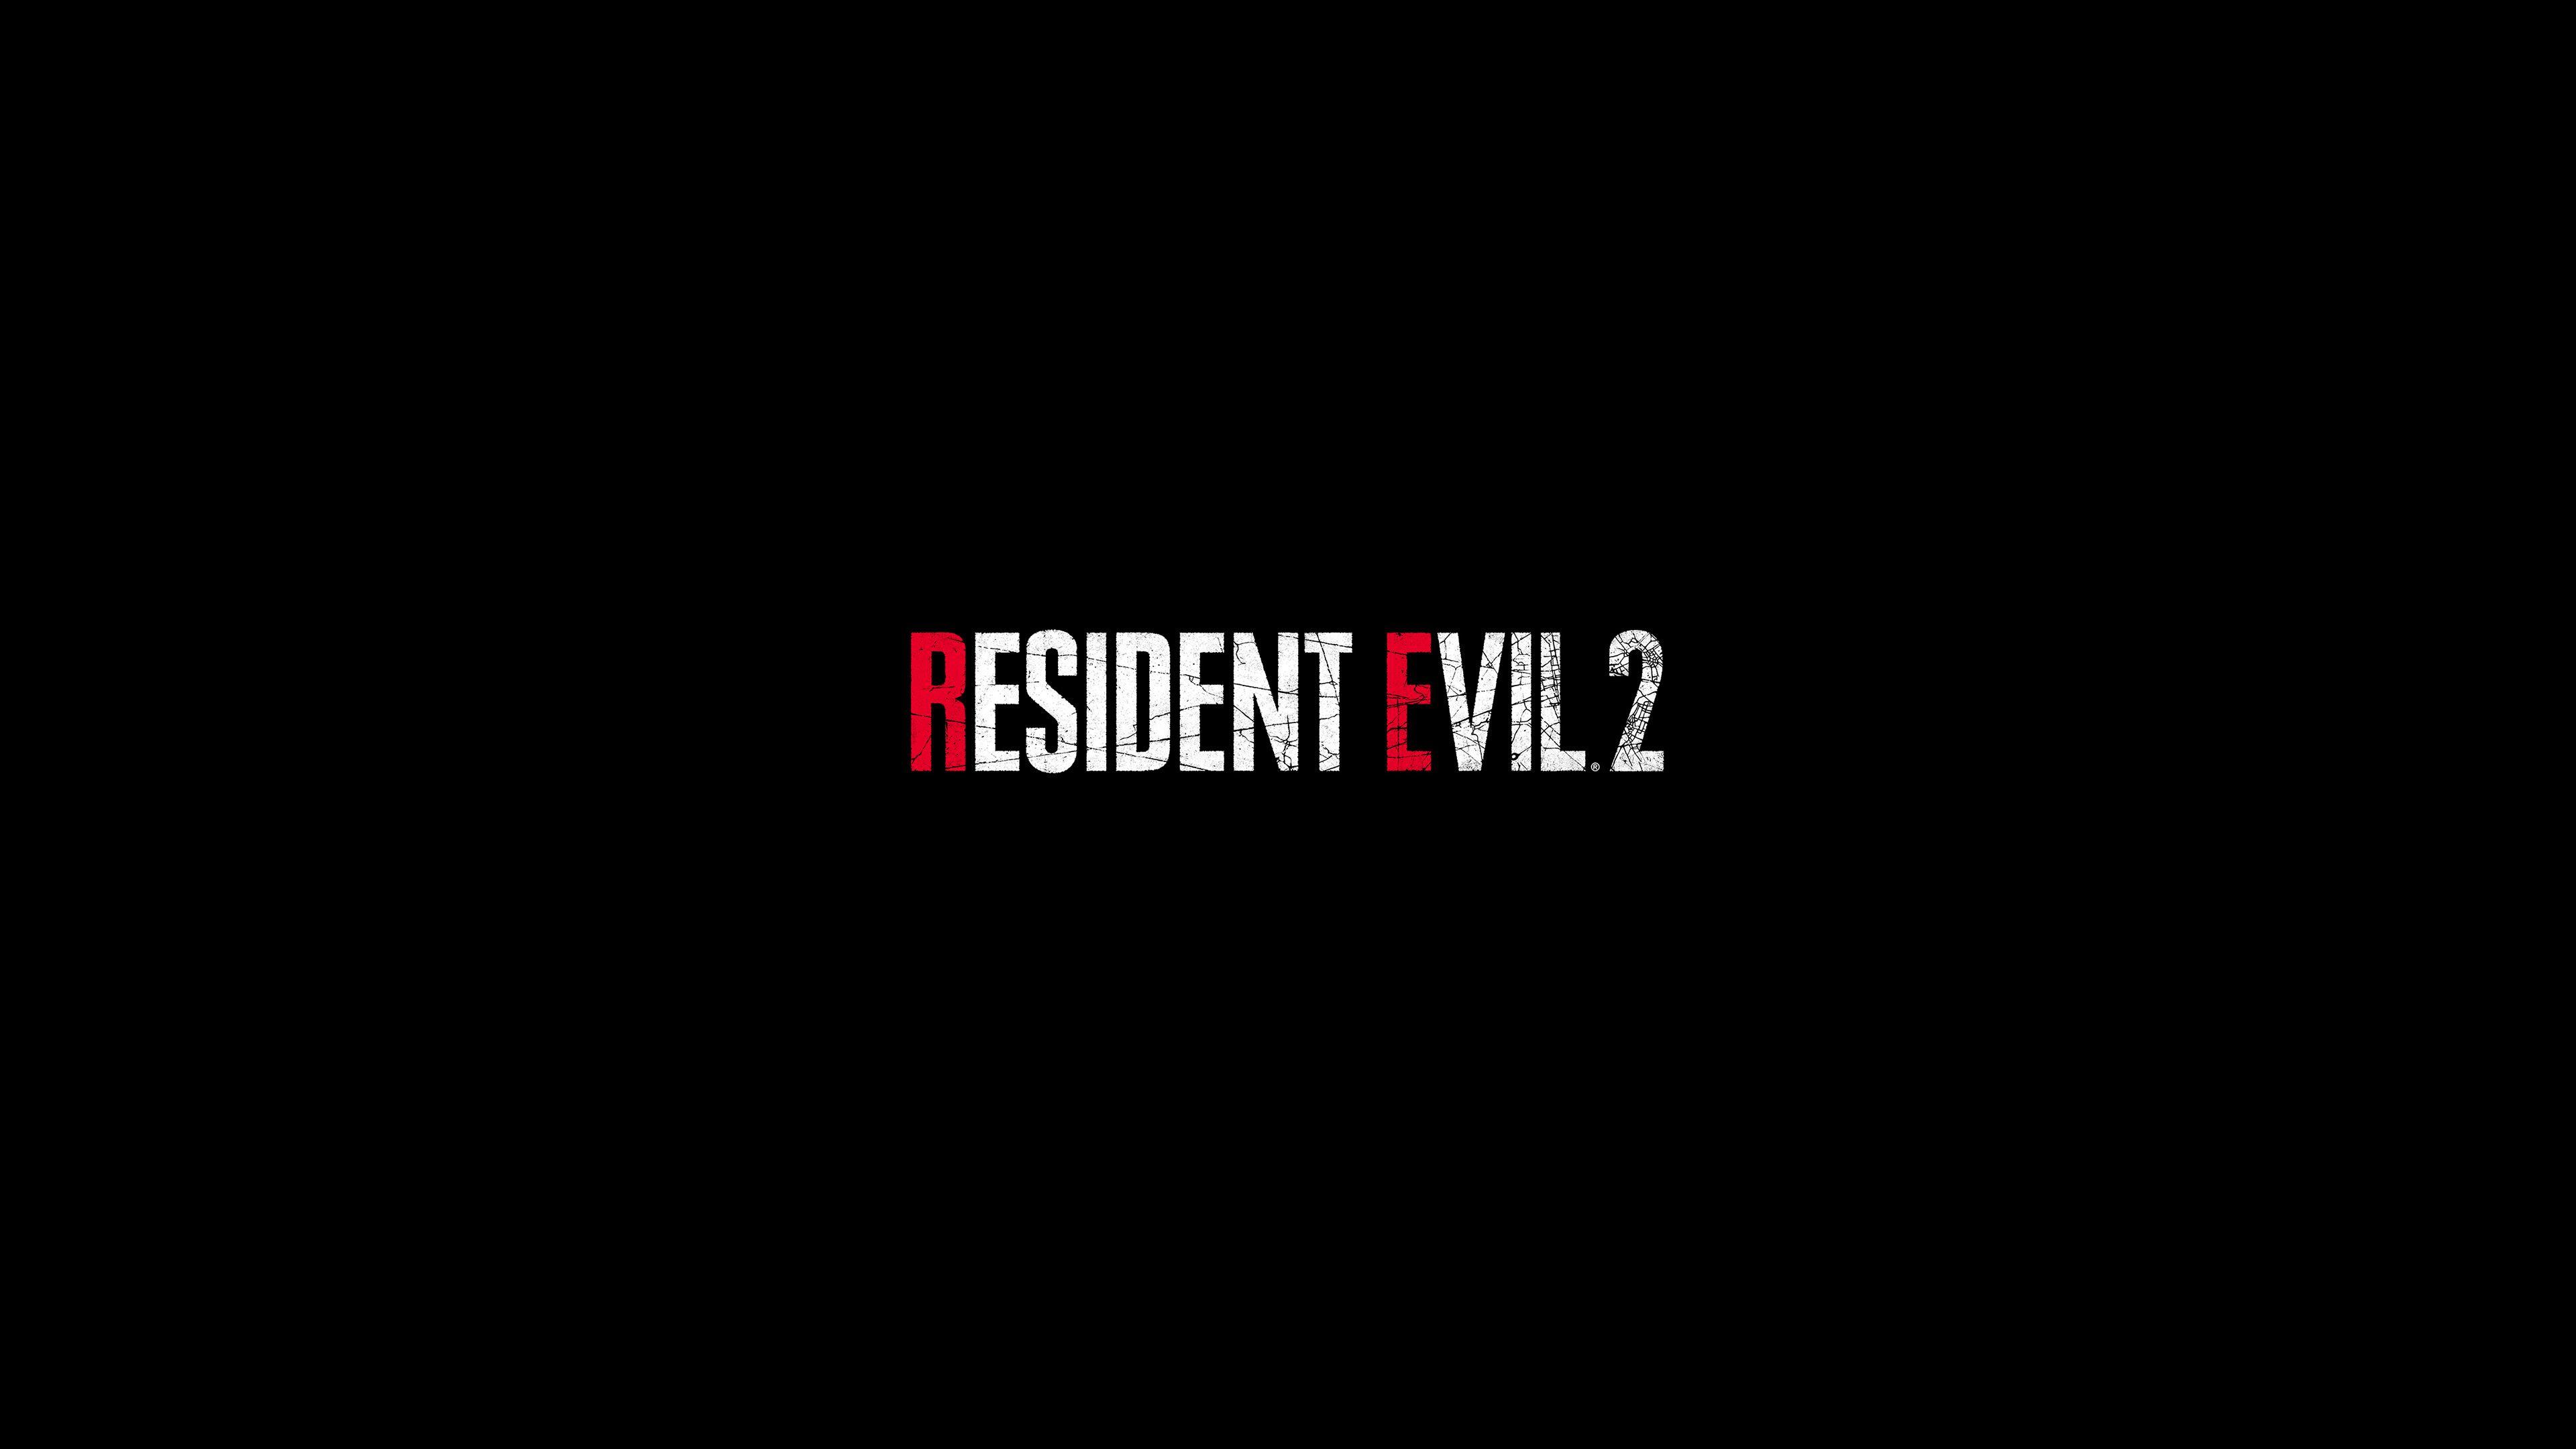 Resident Evil 2 Logo 4k, HD Games, 4k Wallpapers, Image